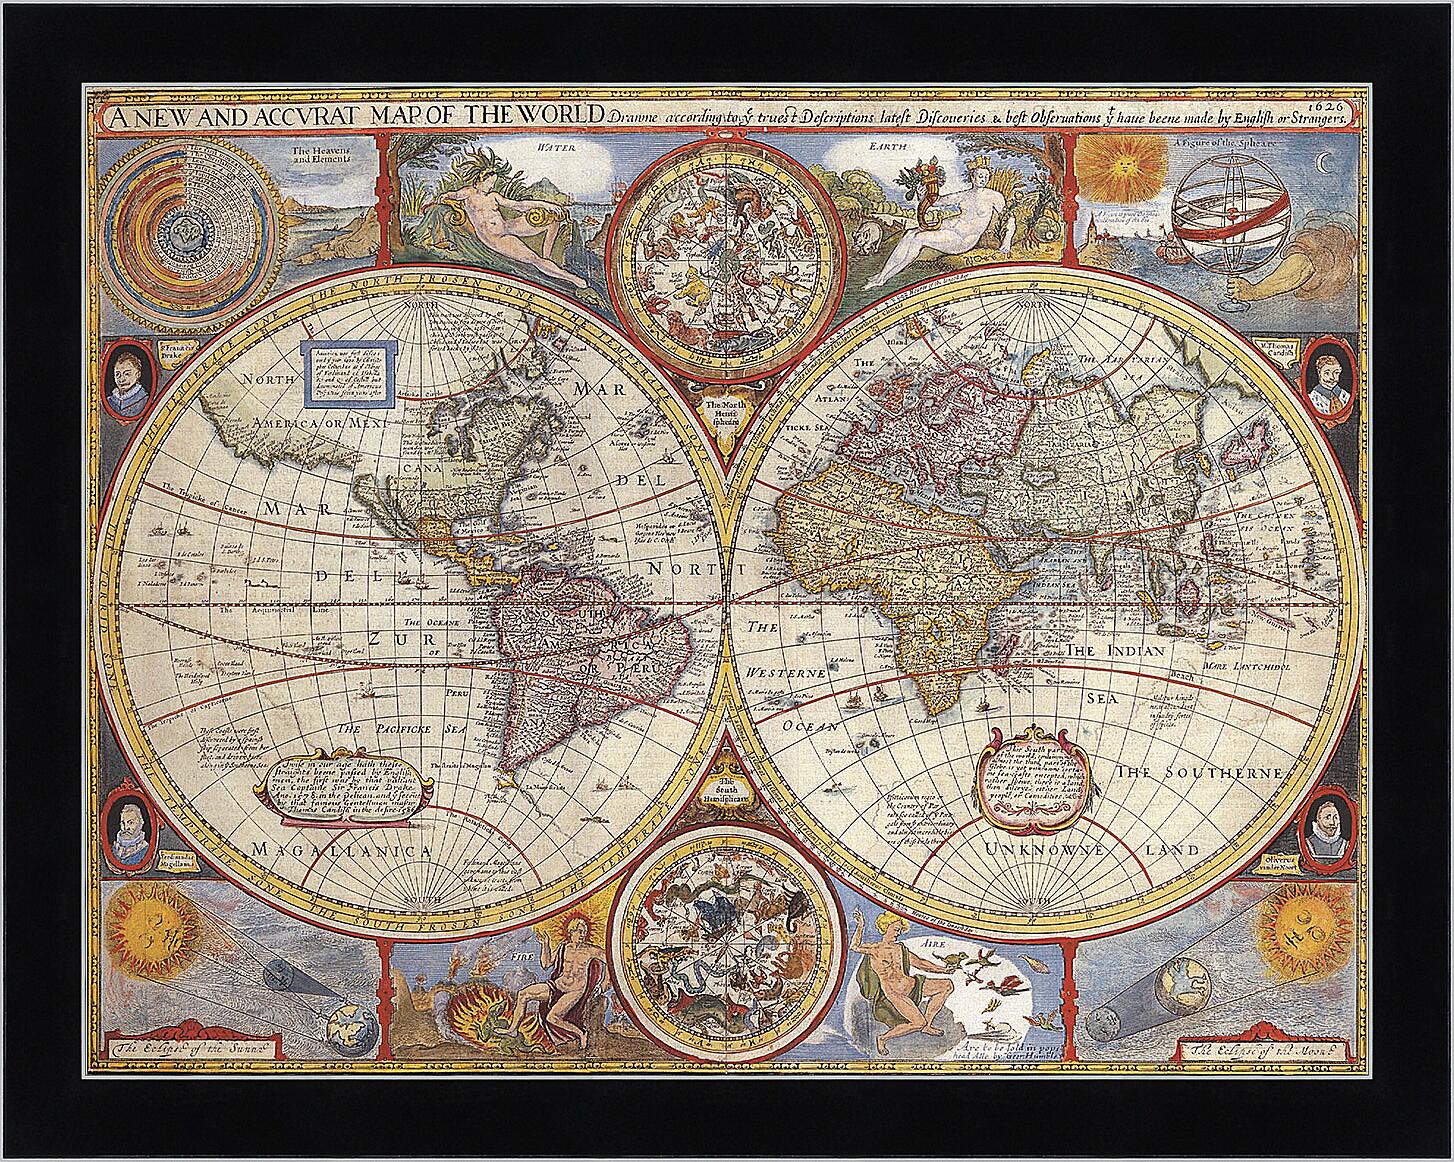 Картина - Карта мира 1626 года
